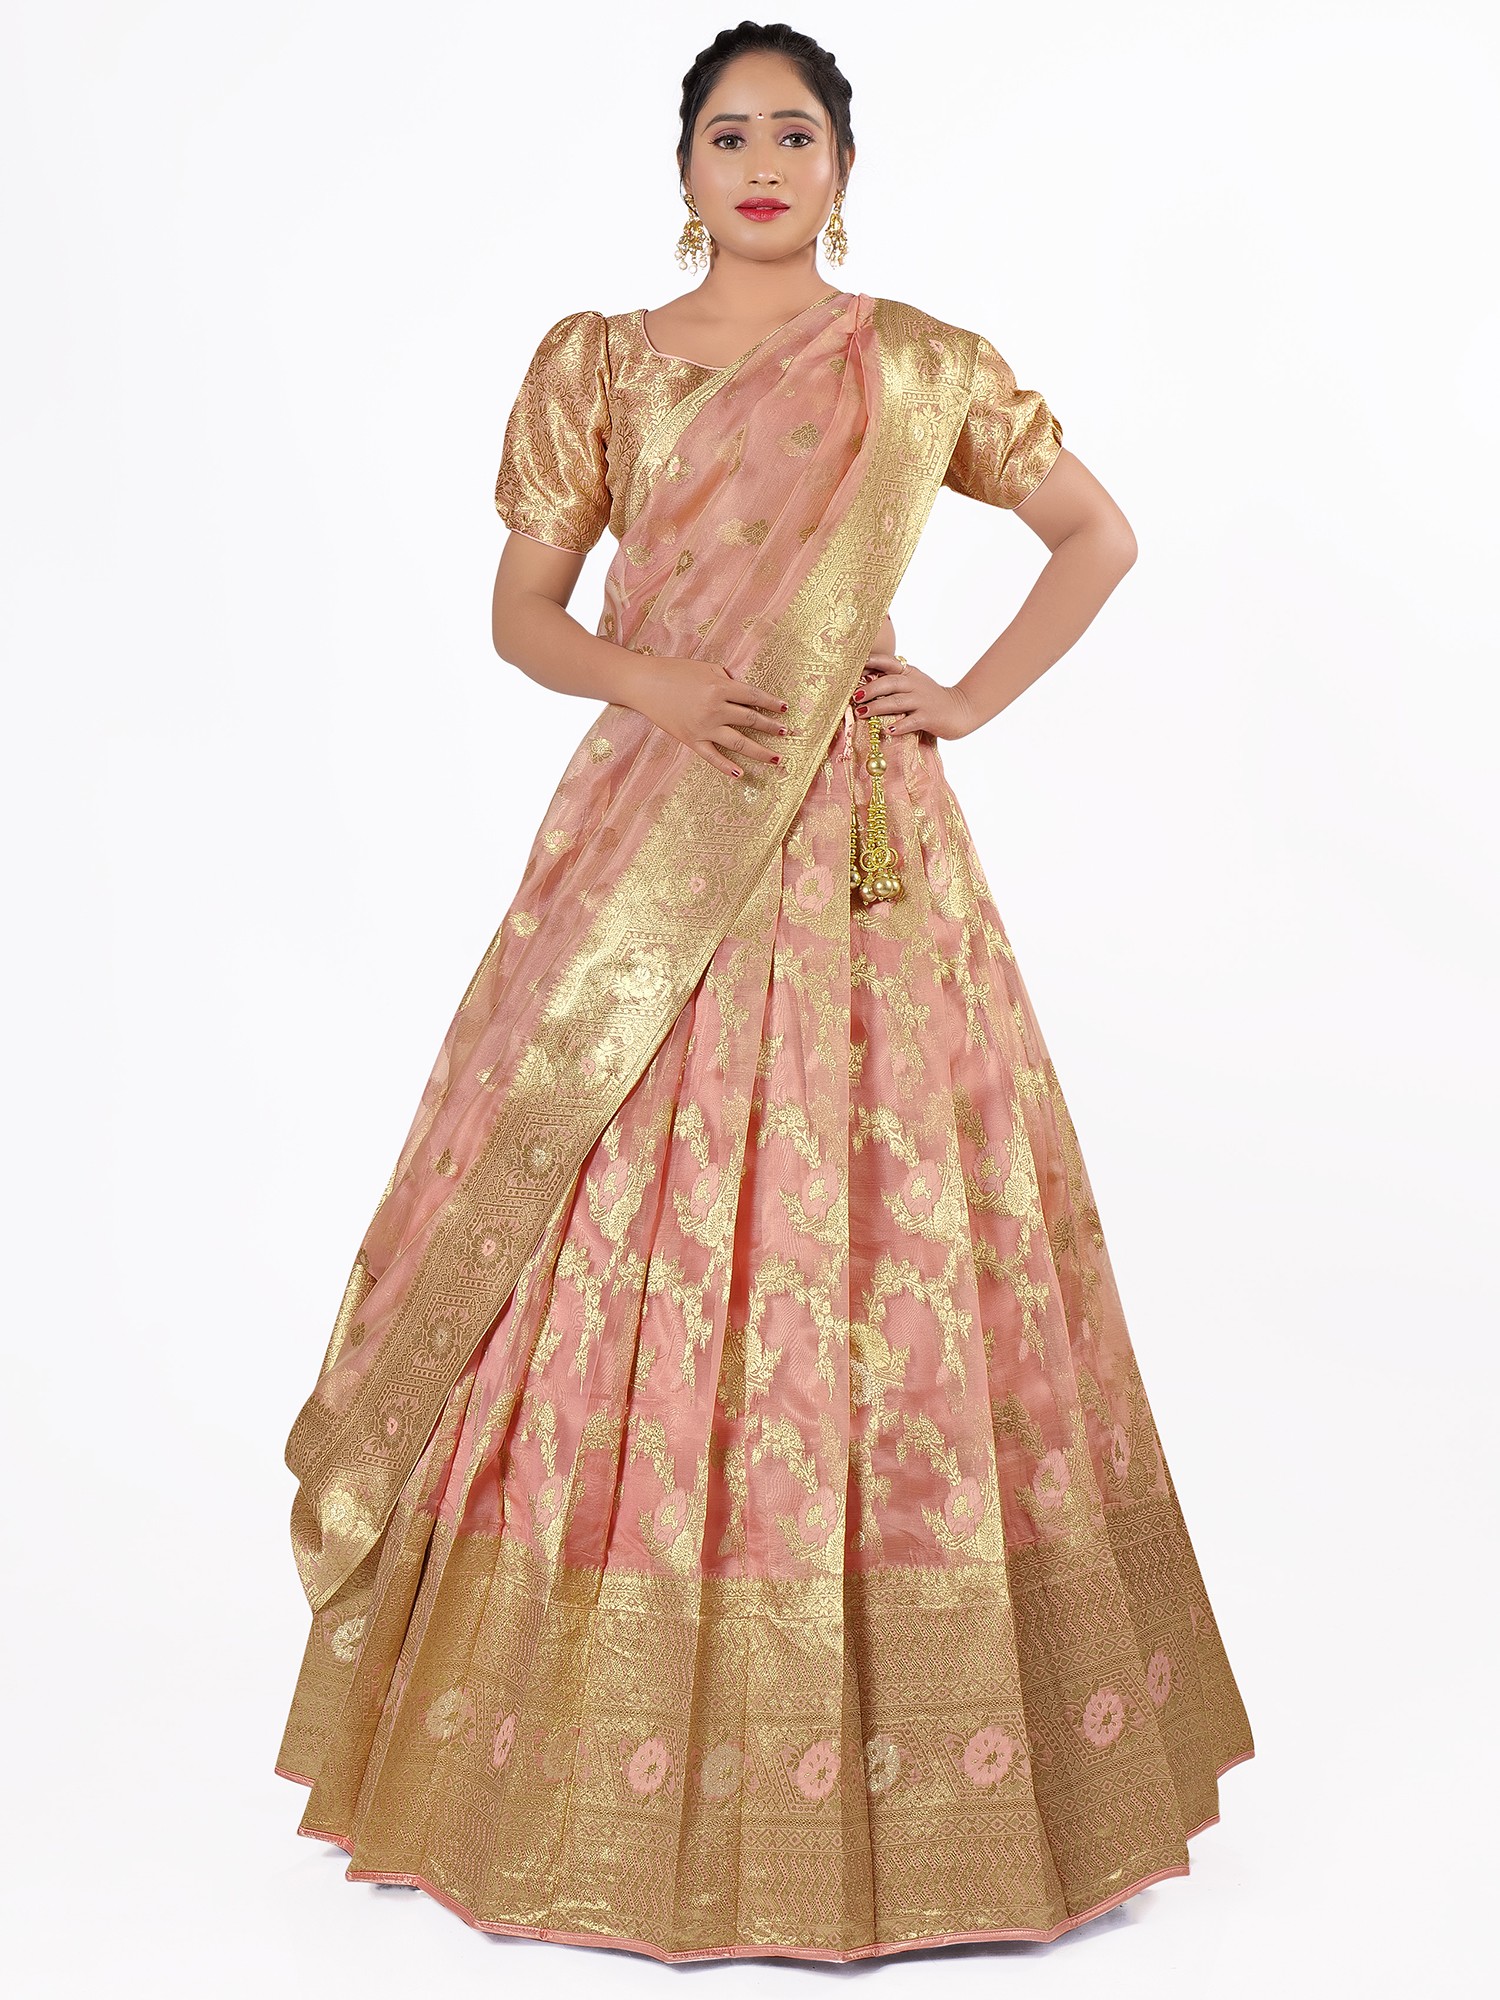 Maroon Kanchipuram Half Saree Lehenga With Readymade Blouse and Dupatta |  Half saree lehenga, Half saree, Pink half sarees